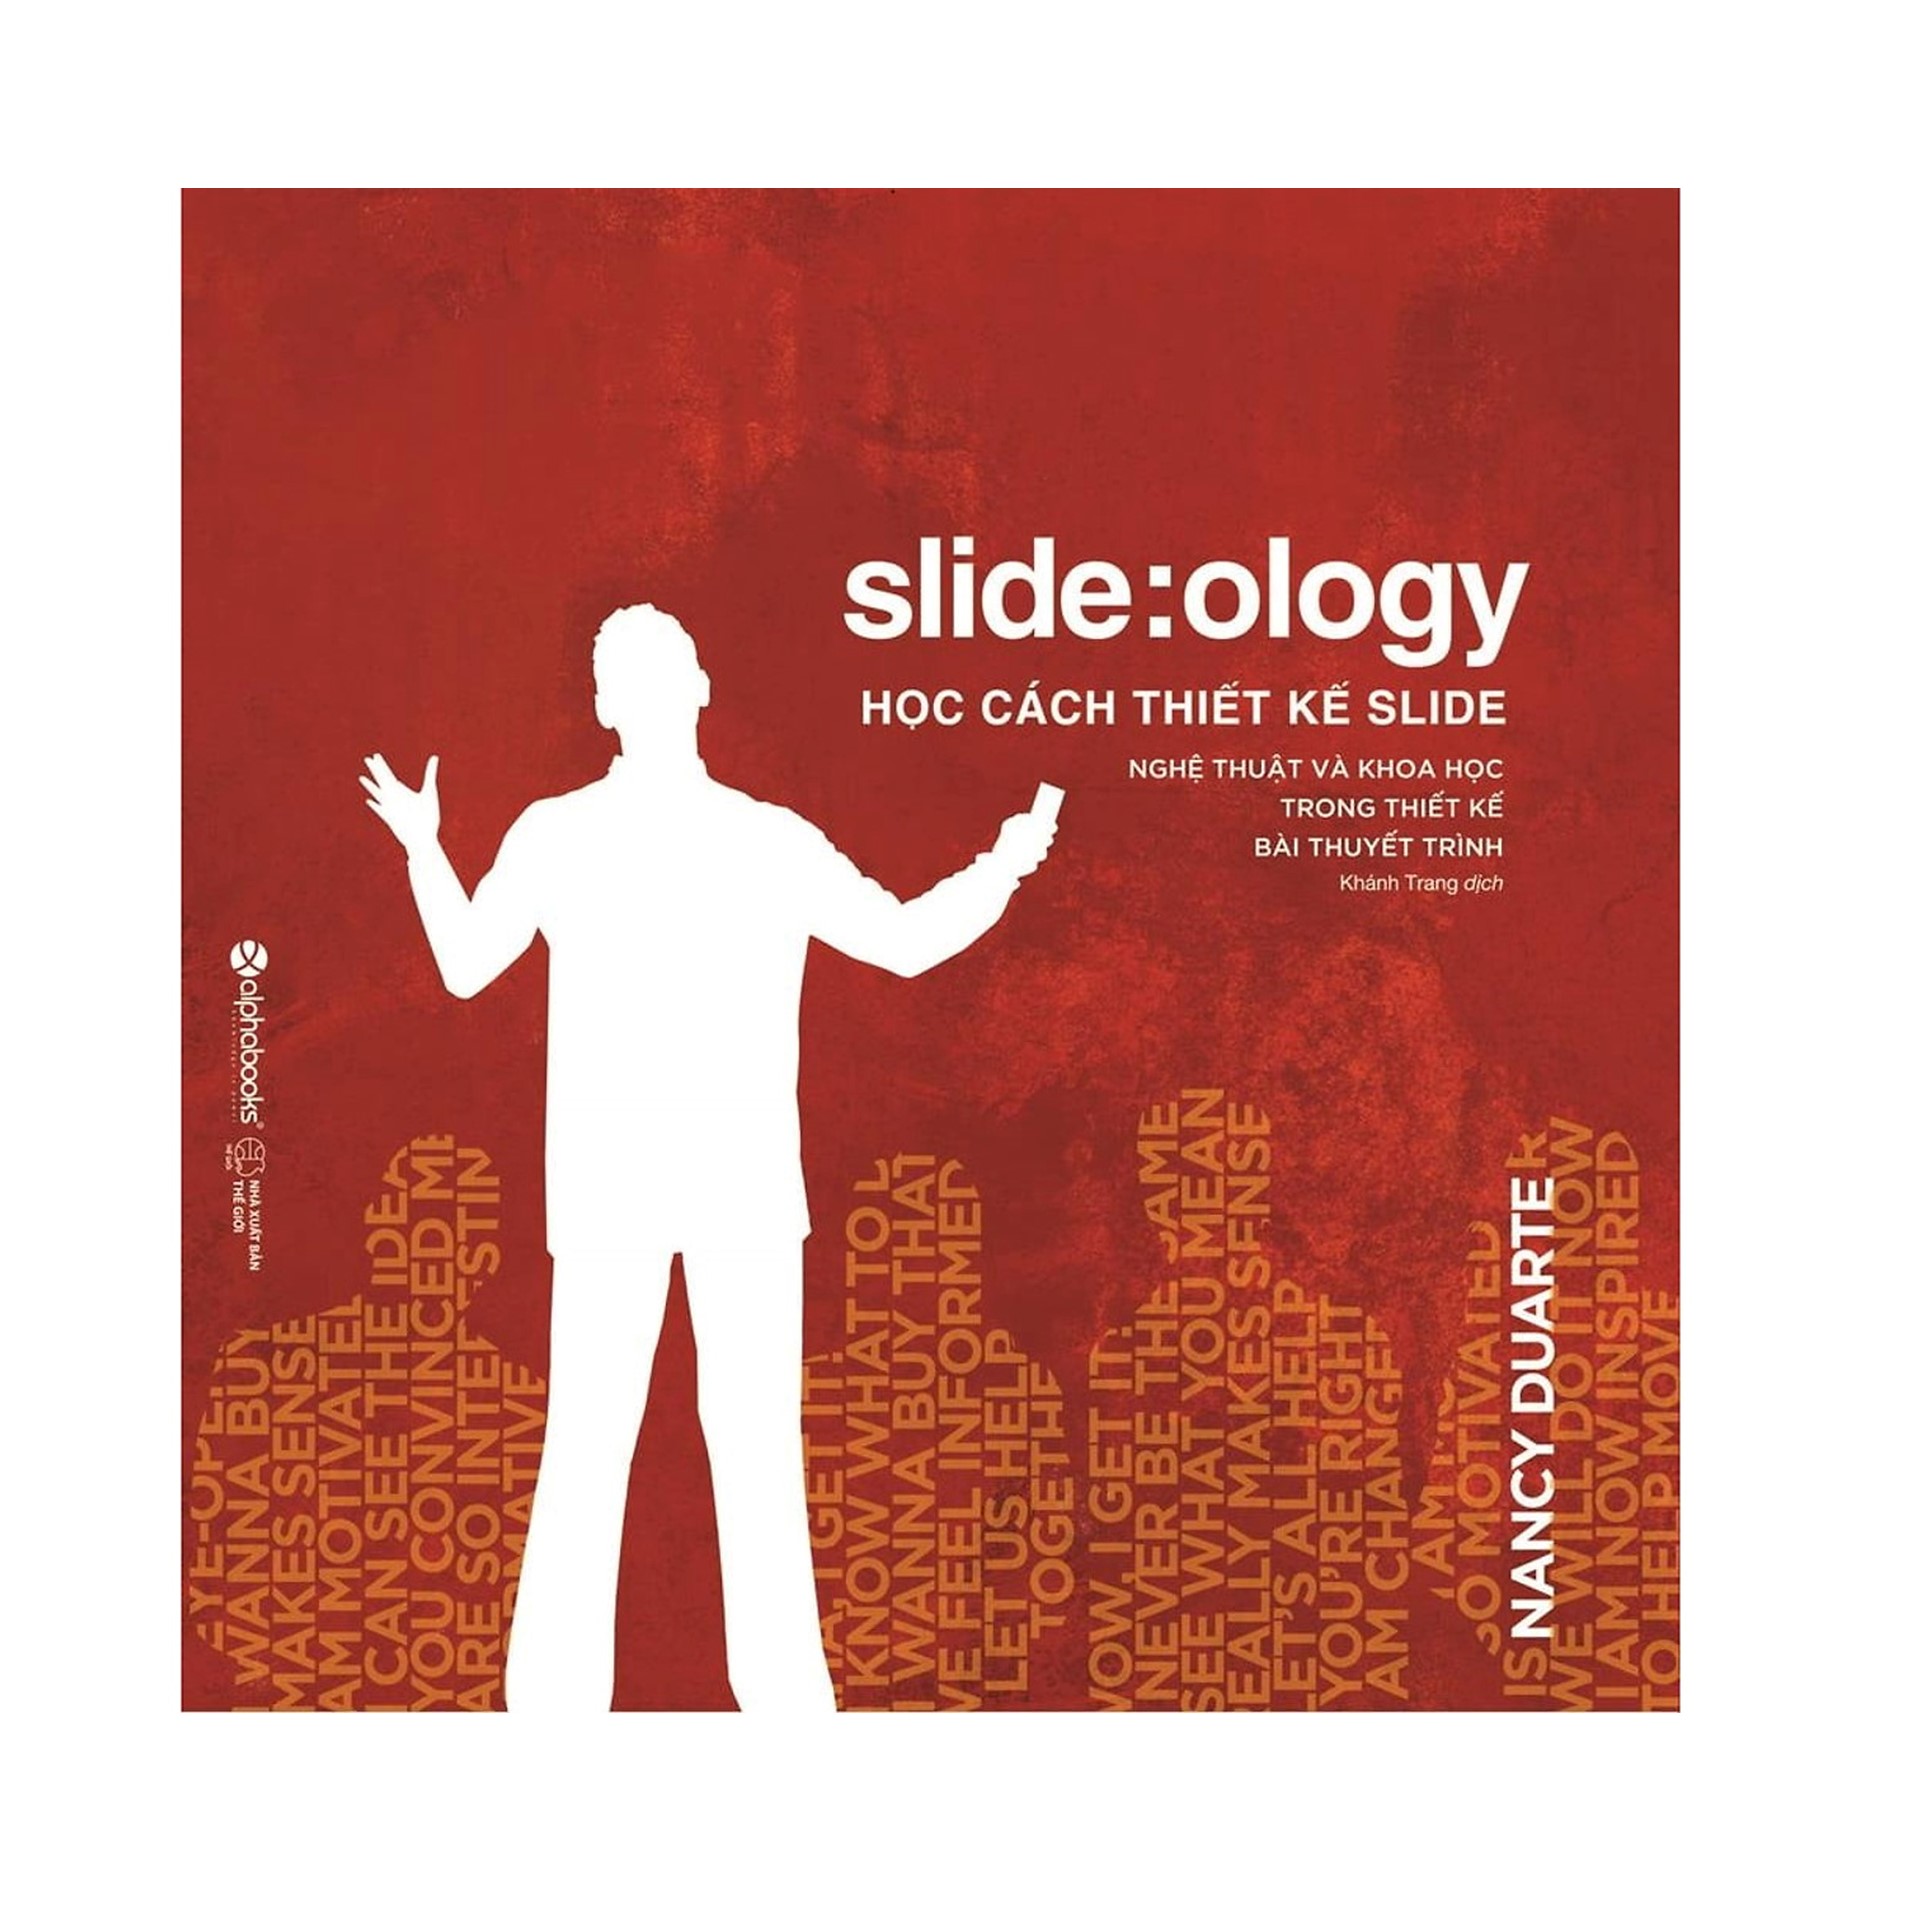 Combo Sách Kỹ Năng Làm Việc : Slideology - Học Cách Thiết Kế Slide + Lãnh Đạo Giỏi Phải Biết Tạo Niềm Vui